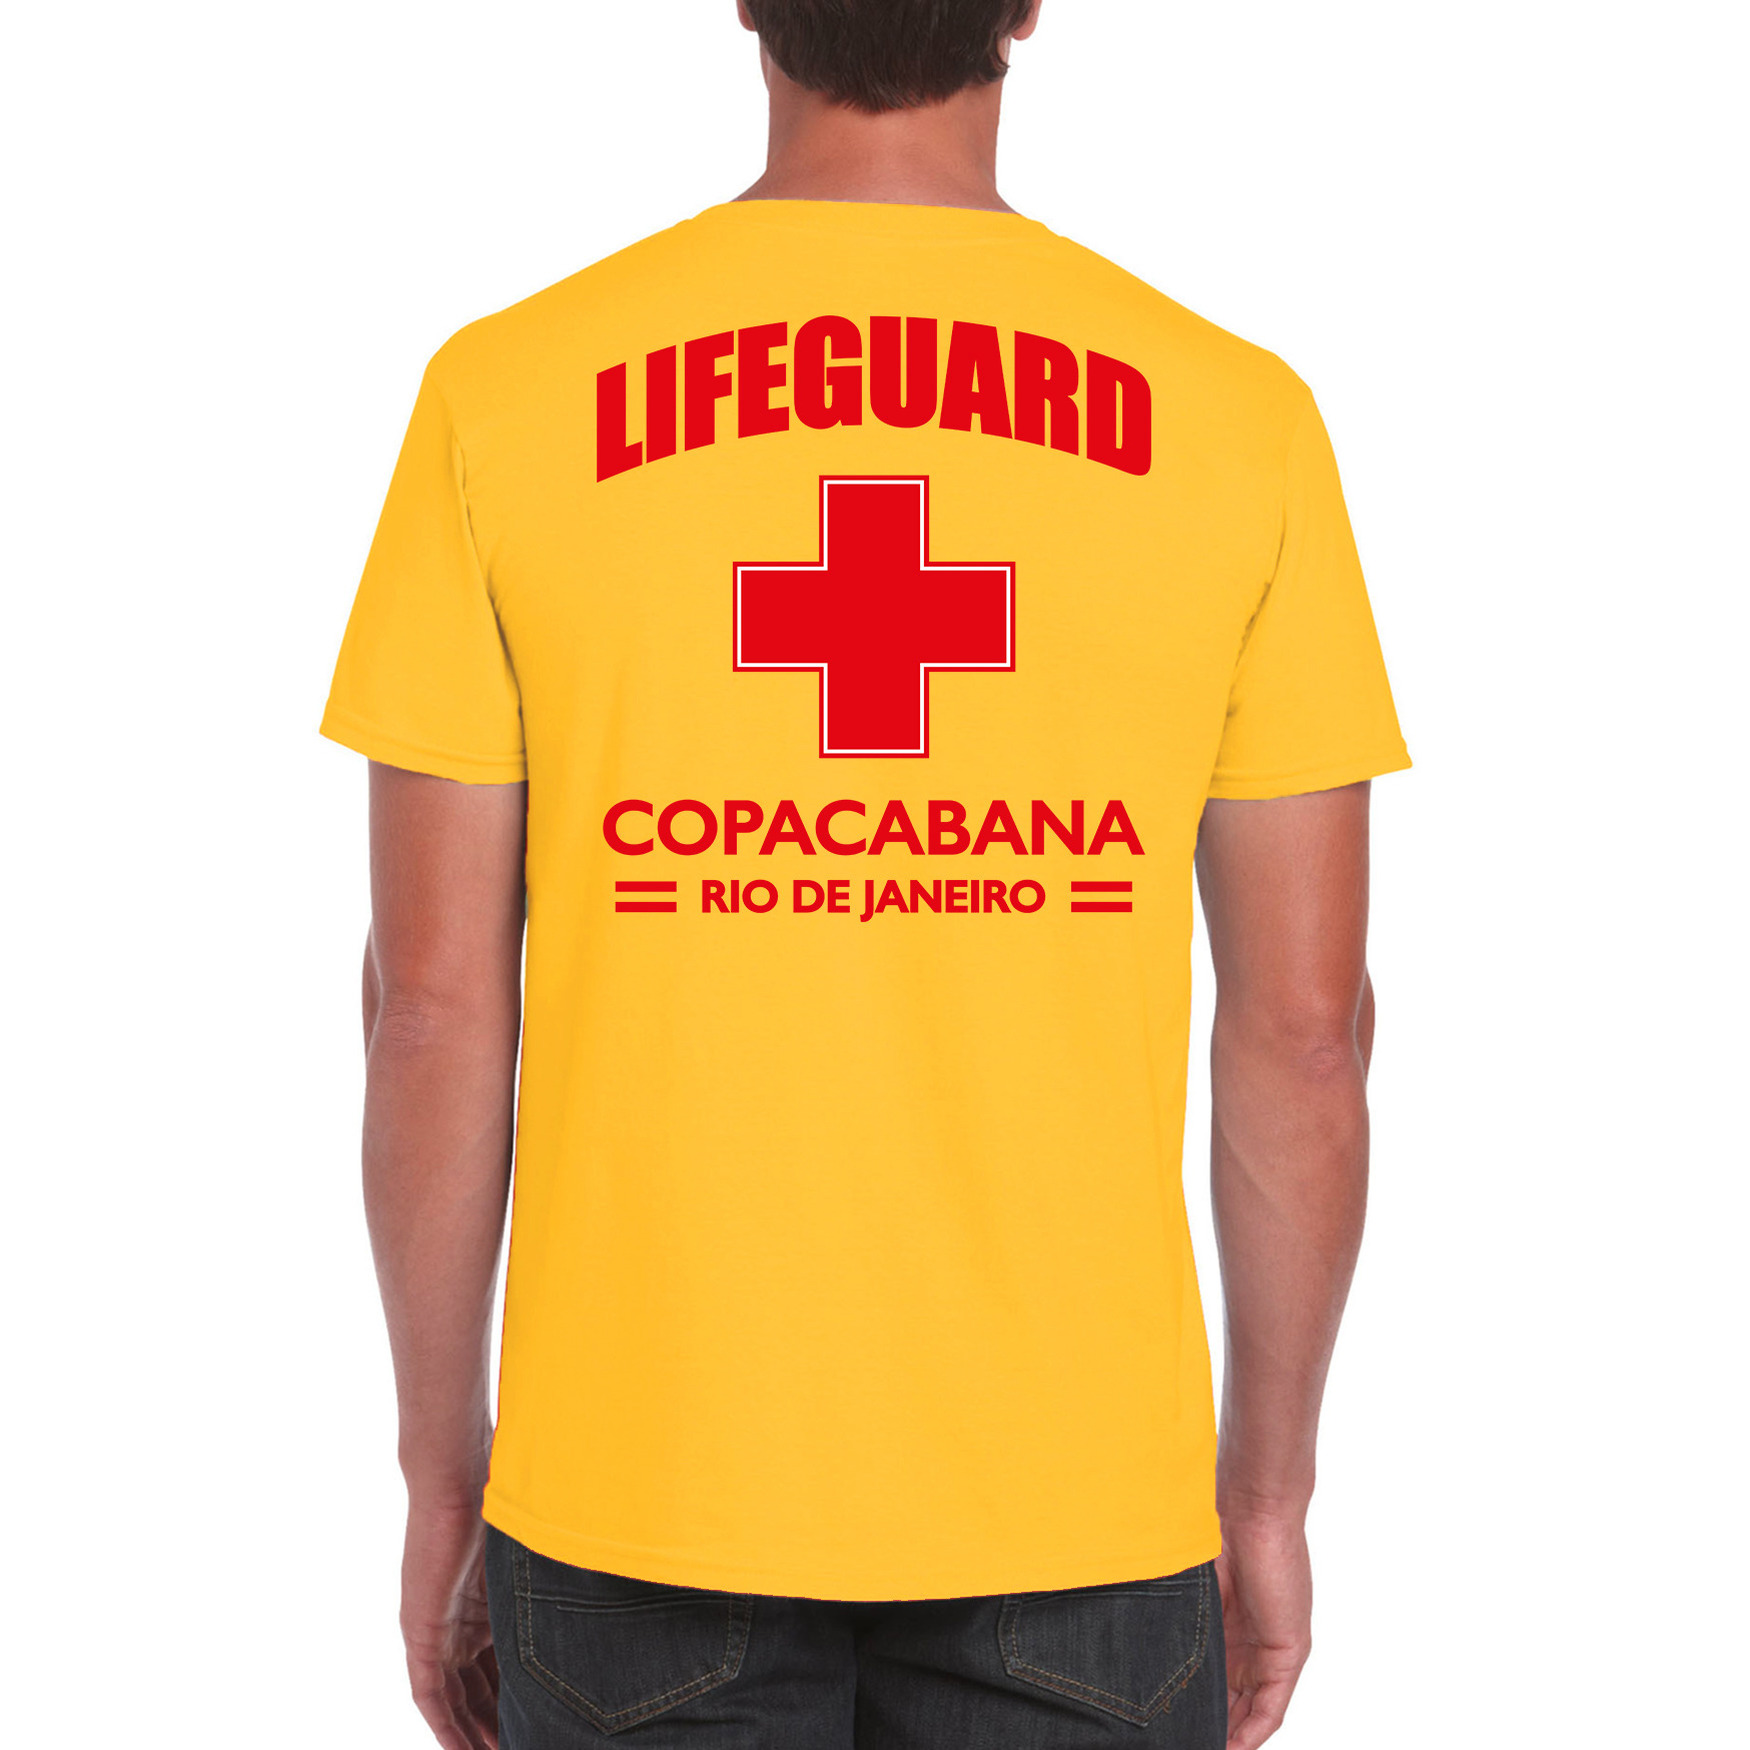 Lifeguard strandwacht verkleed t shirt shirt Lifeguard Copacabana Rio De Janeiro geel voor heren